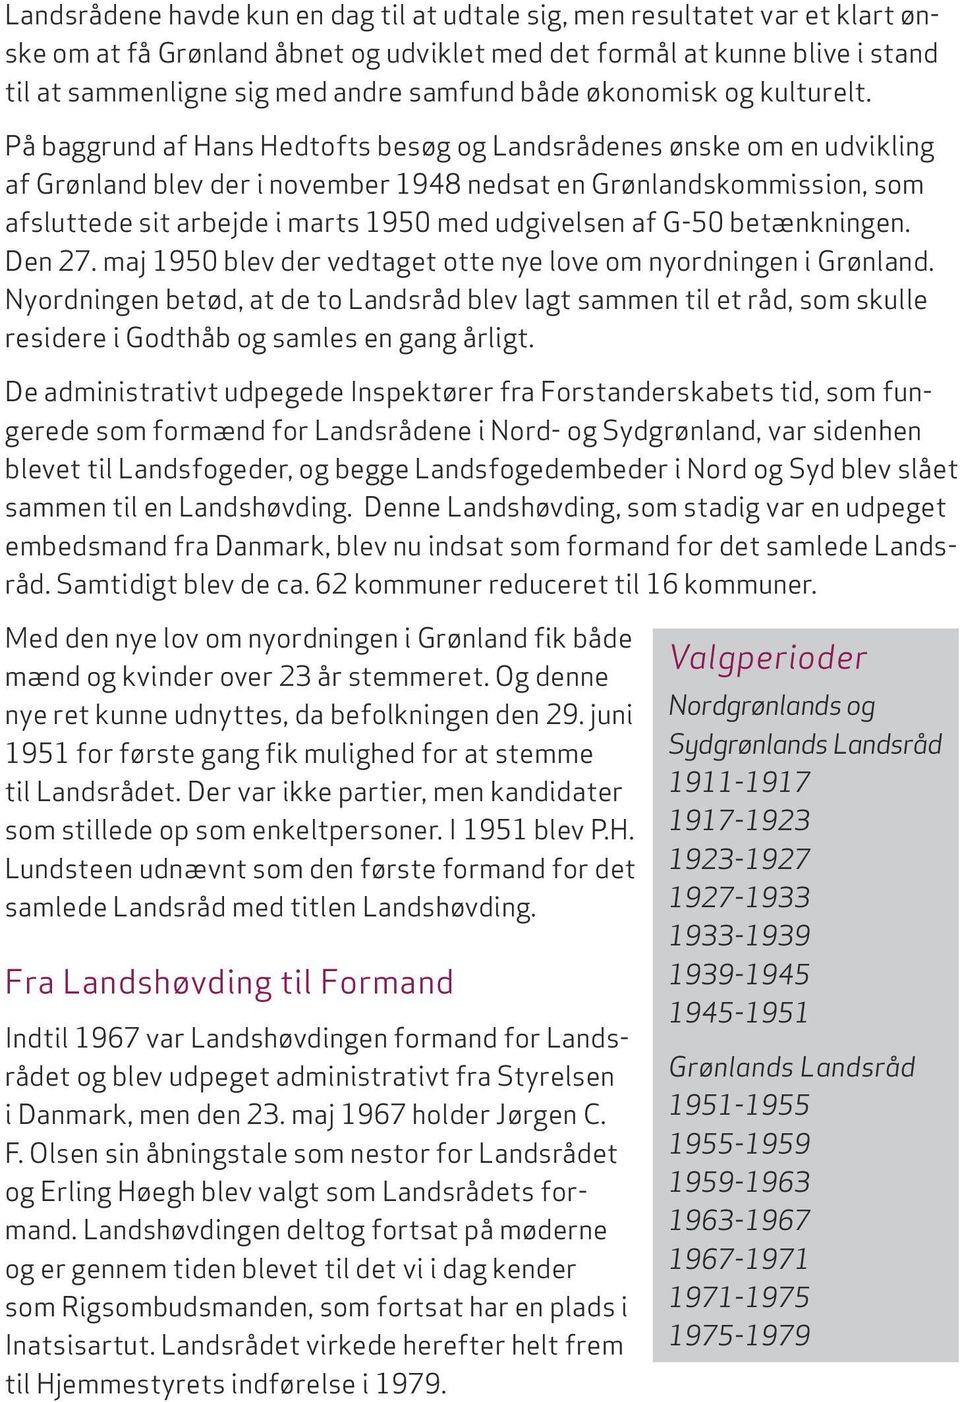 På baggrund af Hans Hedtofts besøg og Landsrådenes ønske om en udvikling af Grønland blev der i november 1948 nedsat en Grønlandskommission, som afsluttede sit arbejde i marts 1950 med udgivelsen af